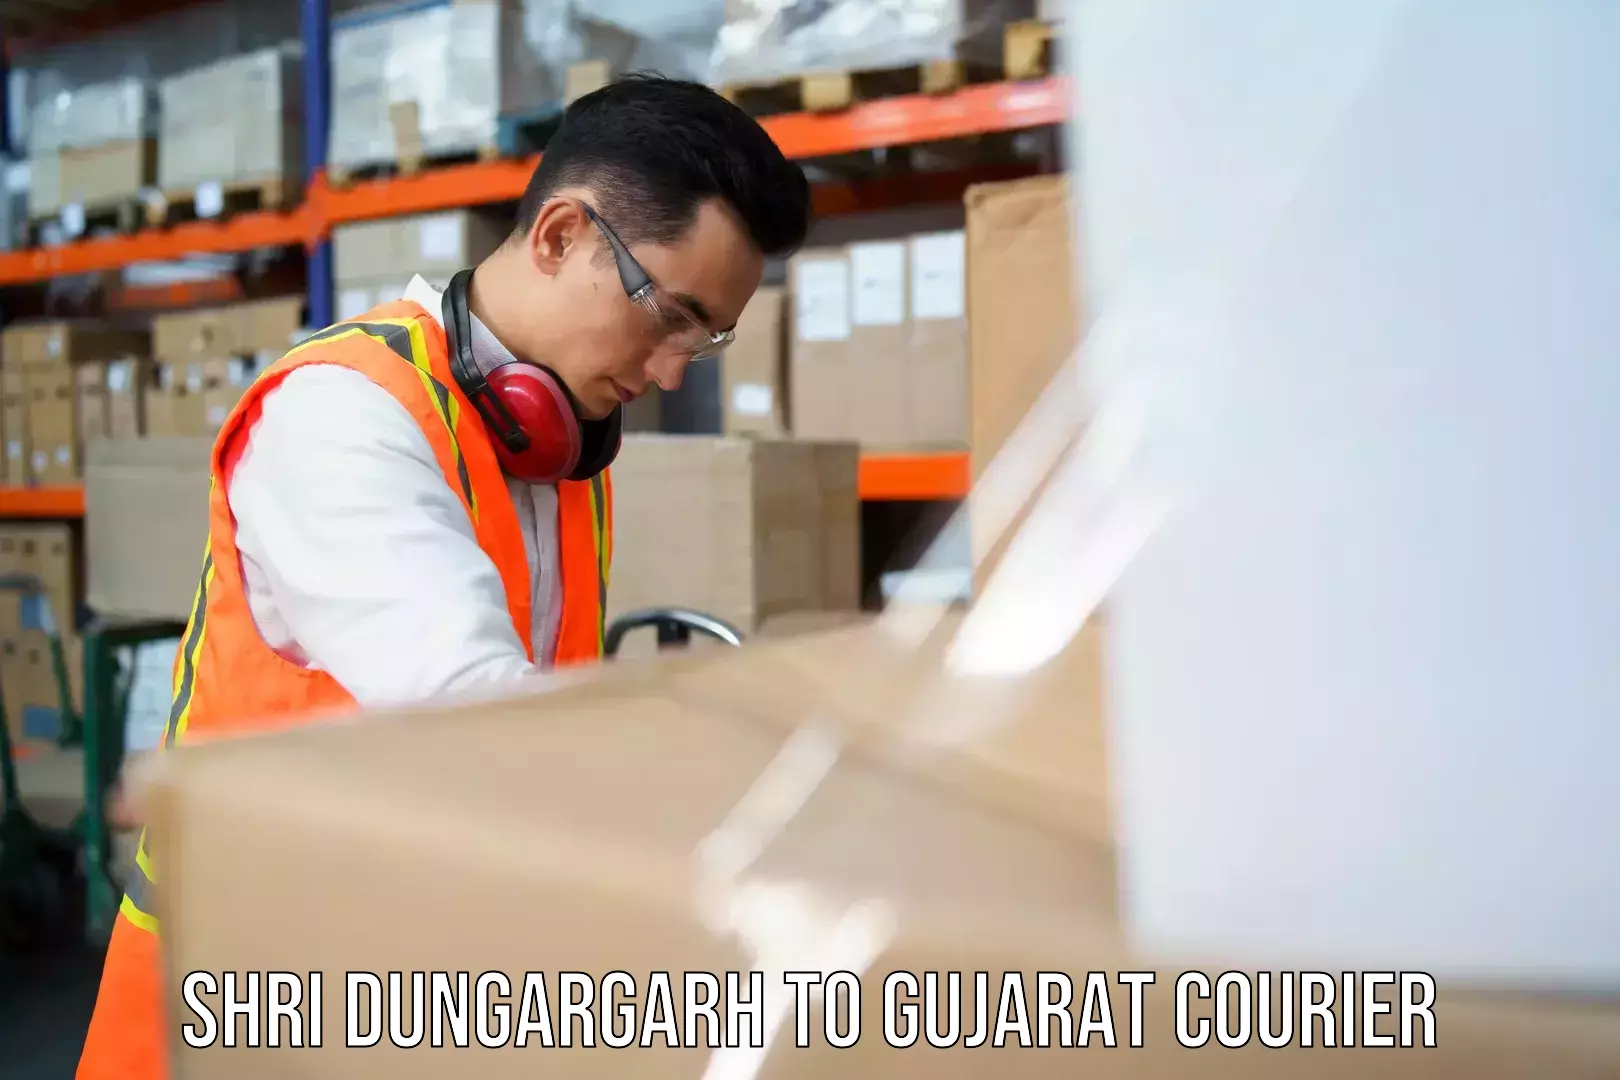 24/7 courier service Shri Dungargarh to Vadodara